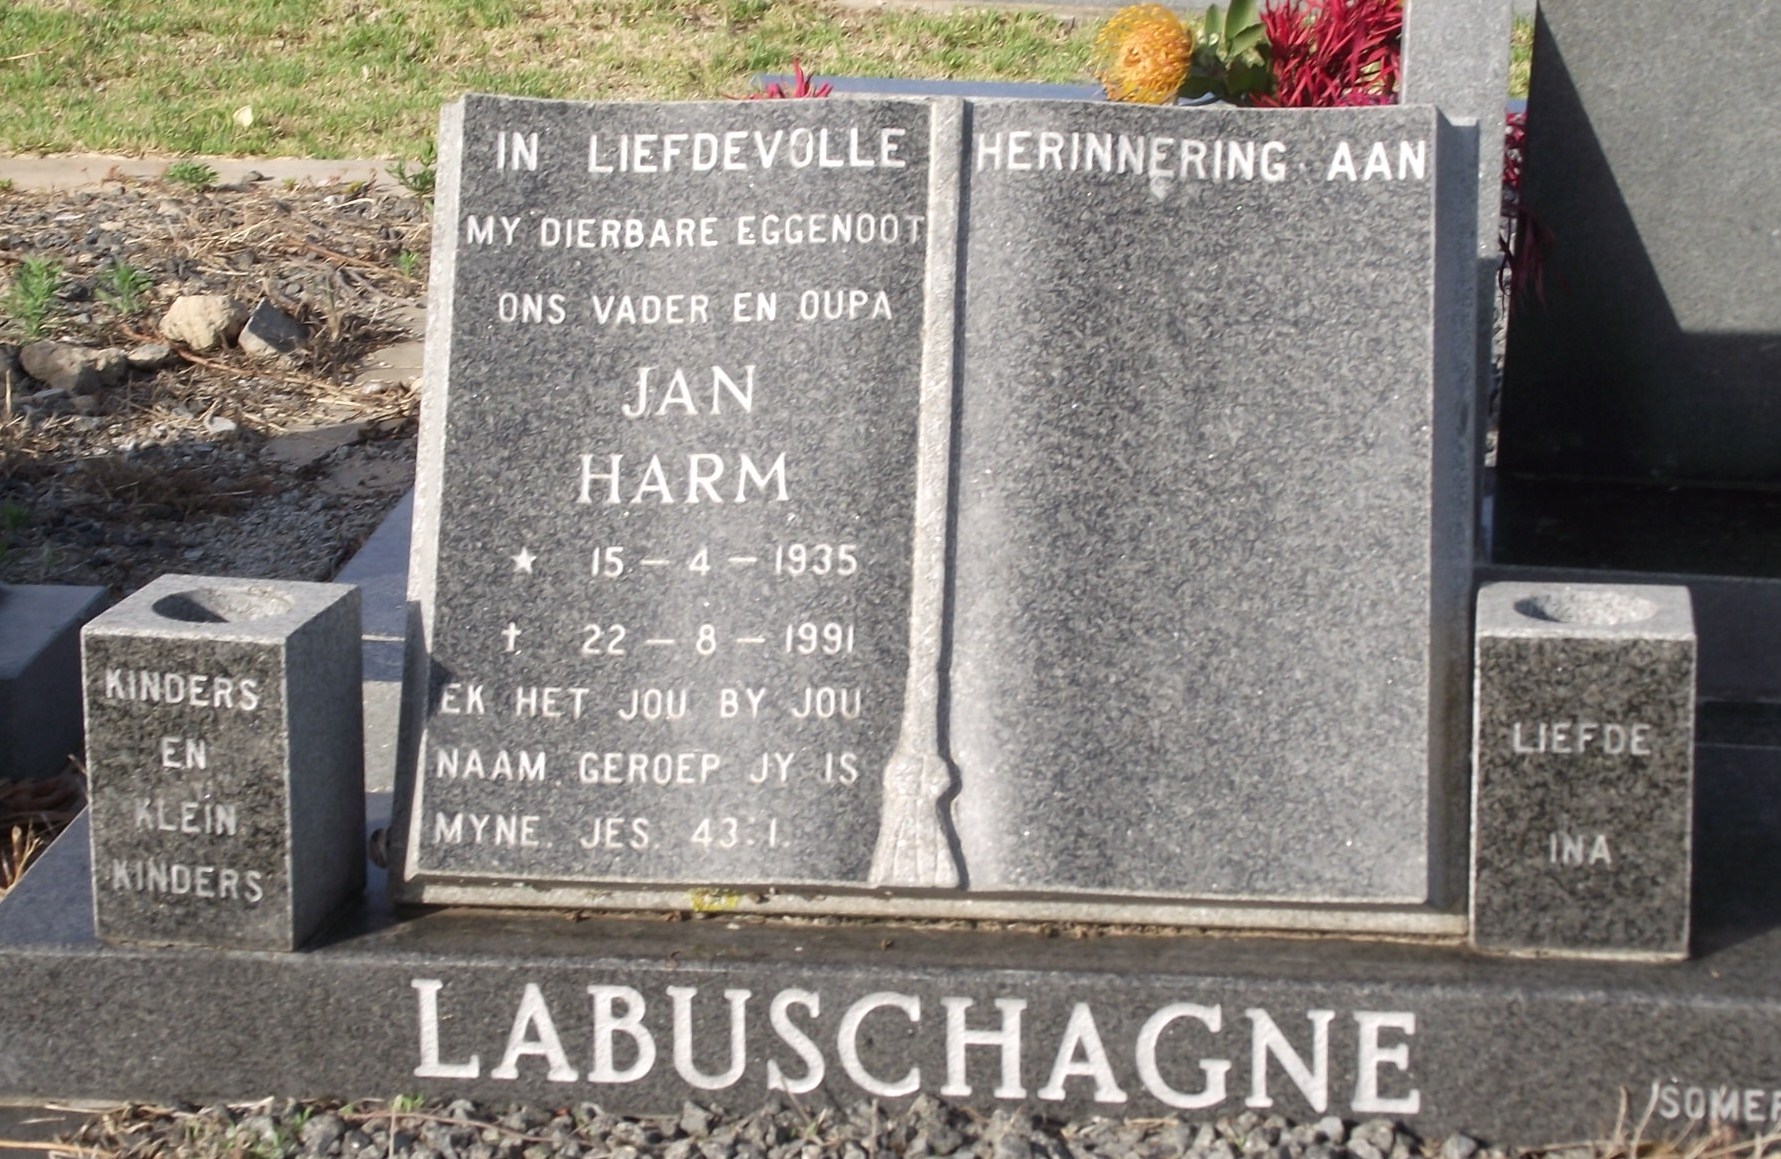 LABUSCHAGNE Jan Harm 1935-1991